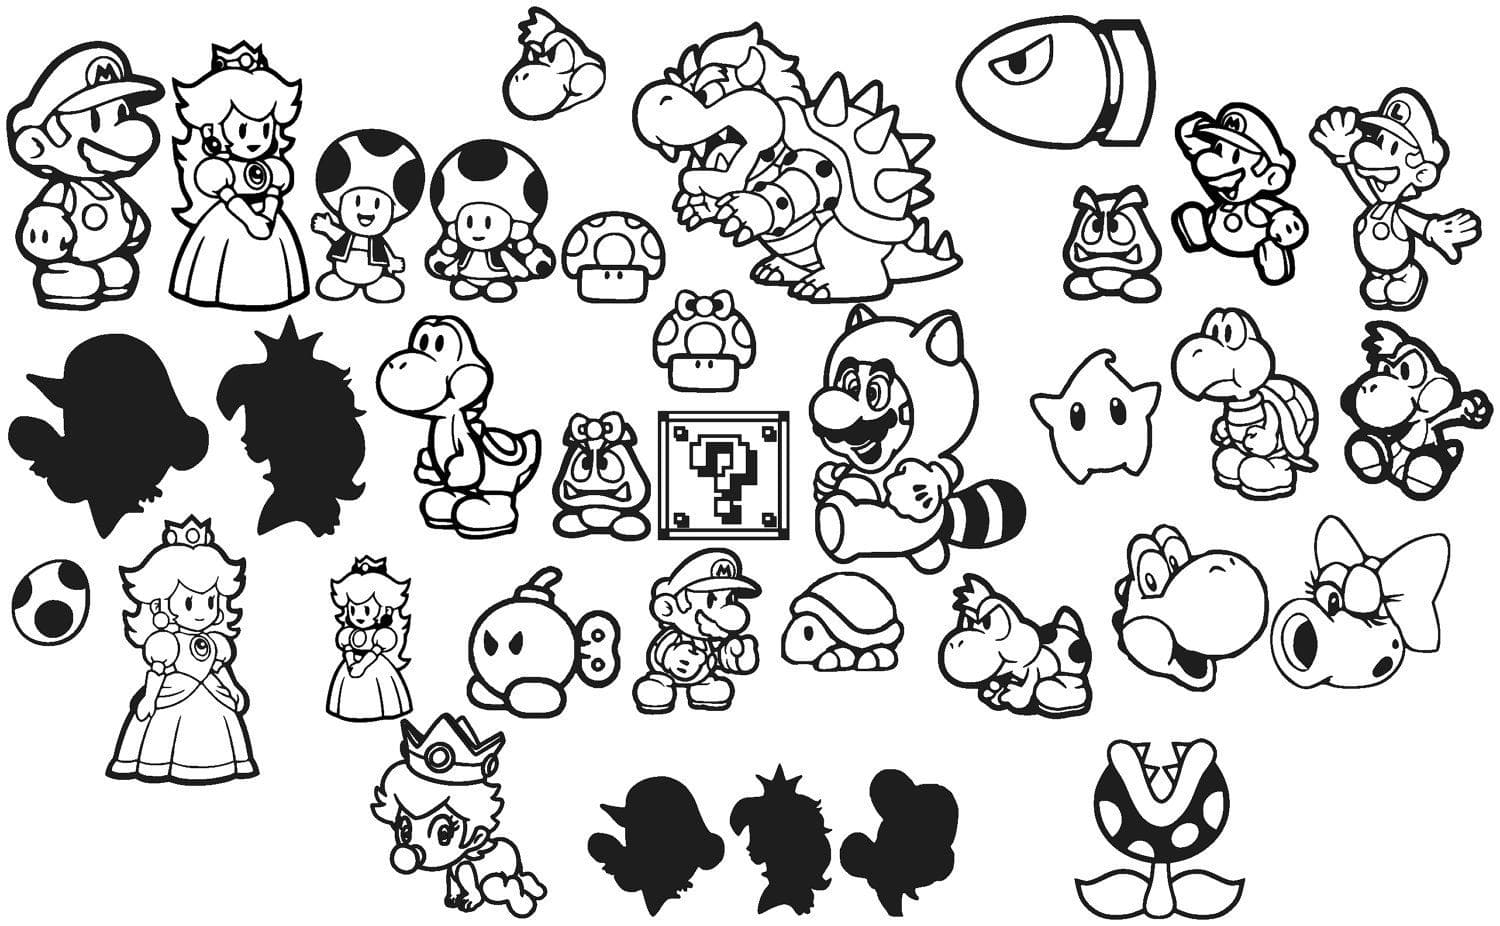 Dibujos Para Colorear De Todos Los Personajes De Mario Bros Para